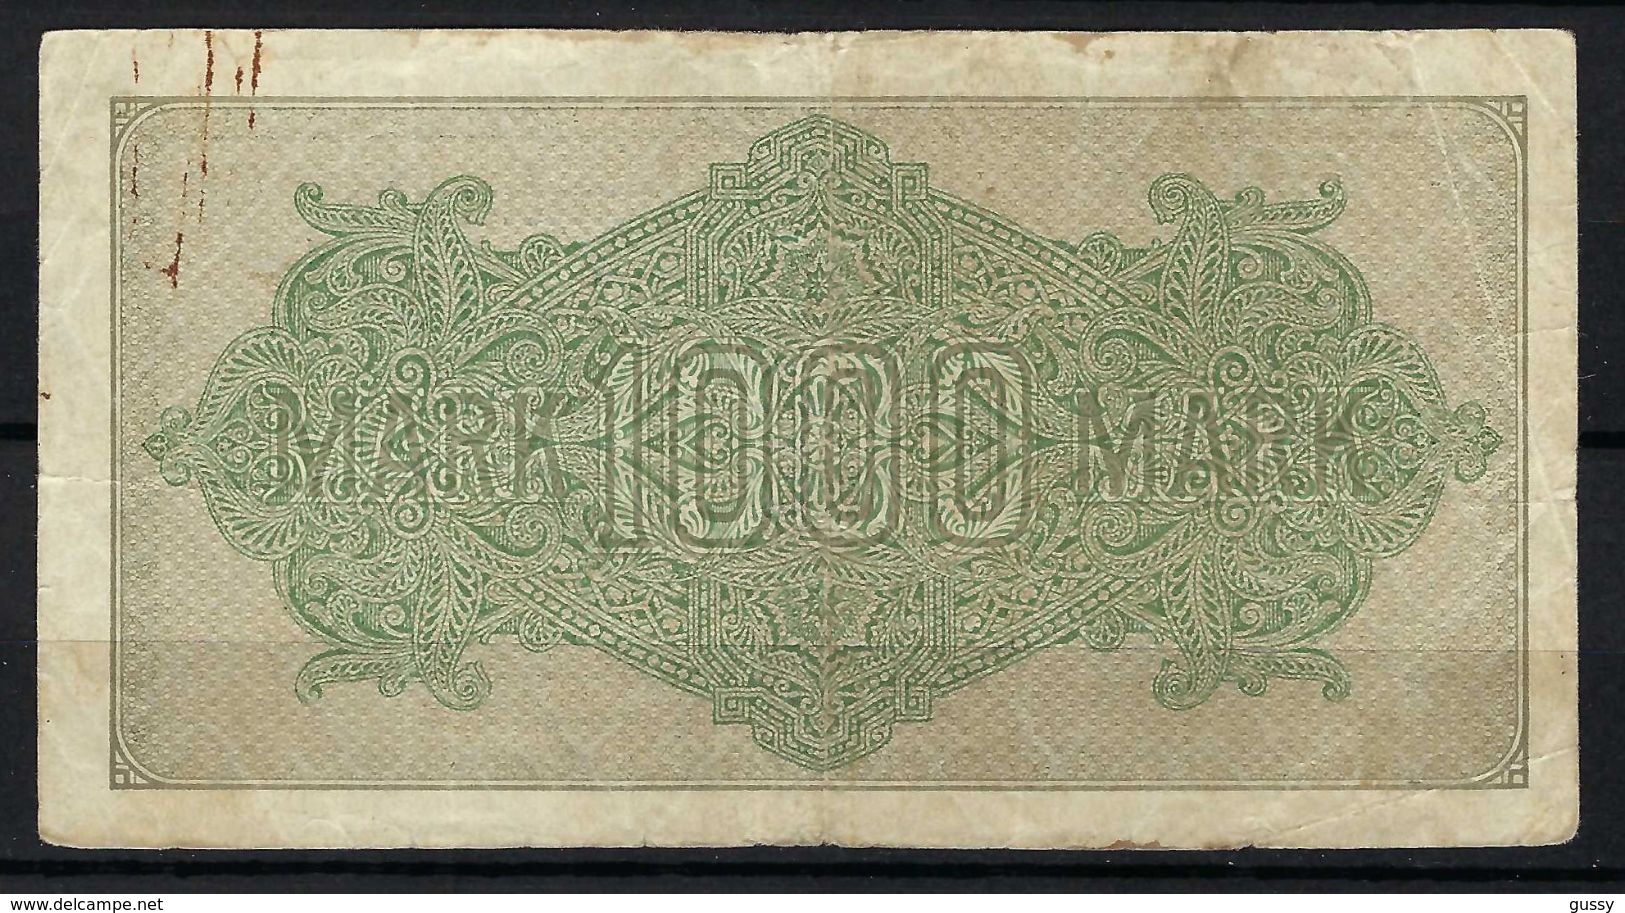 ALLEMAGNE 1923:  Billet De 1'000 Mark De La Reichsbank, Bon état - 1000 Mark